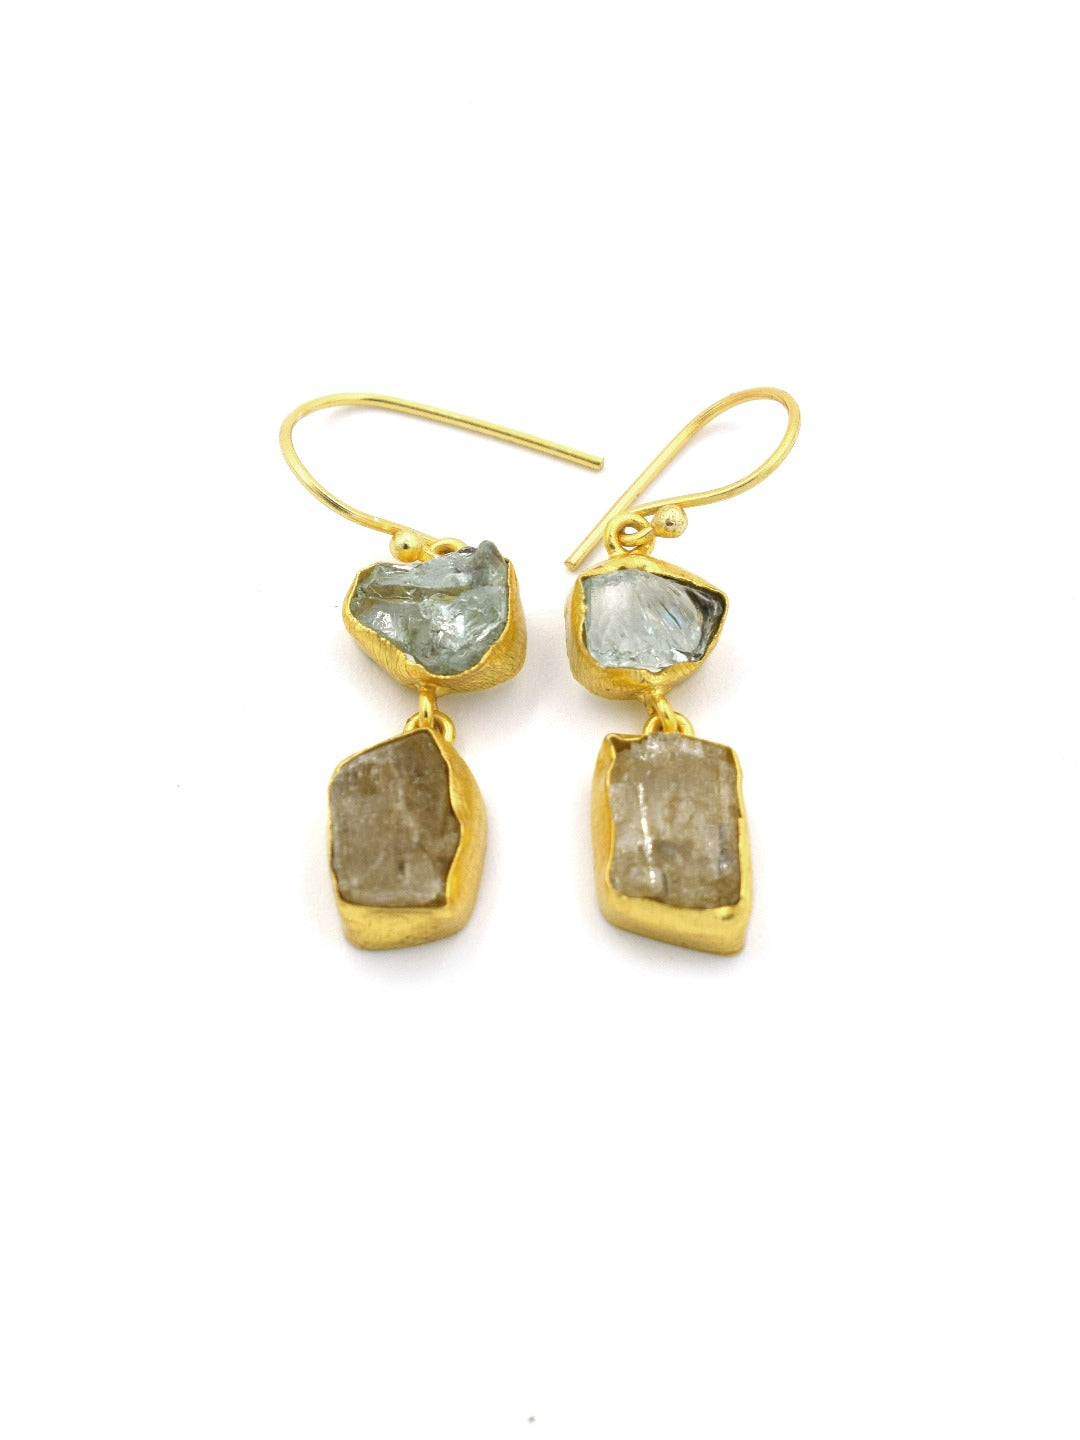 Dual semi precious stone earrings